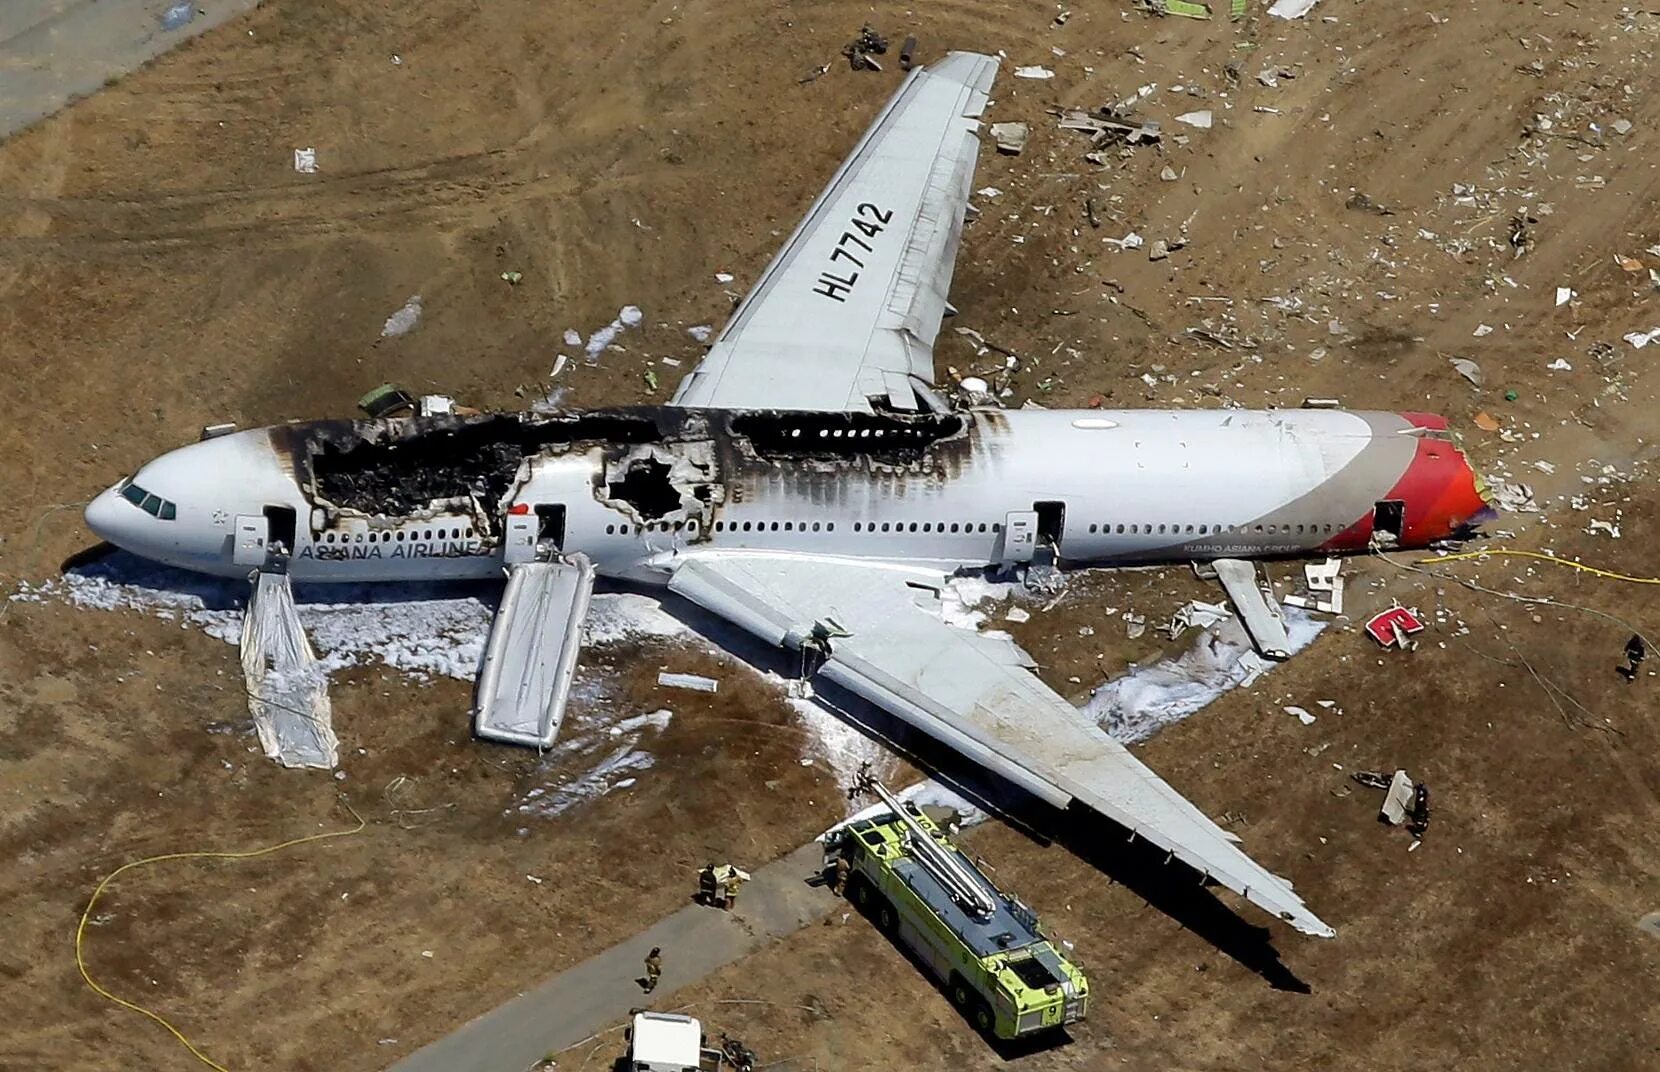 Катастрофа Боинг 777 в Сан-Франциско. Боинг-777" авифкатастрофа. Asiana Airlines самолет крушение. Asiana Airlines Flight 214 катастрофа.